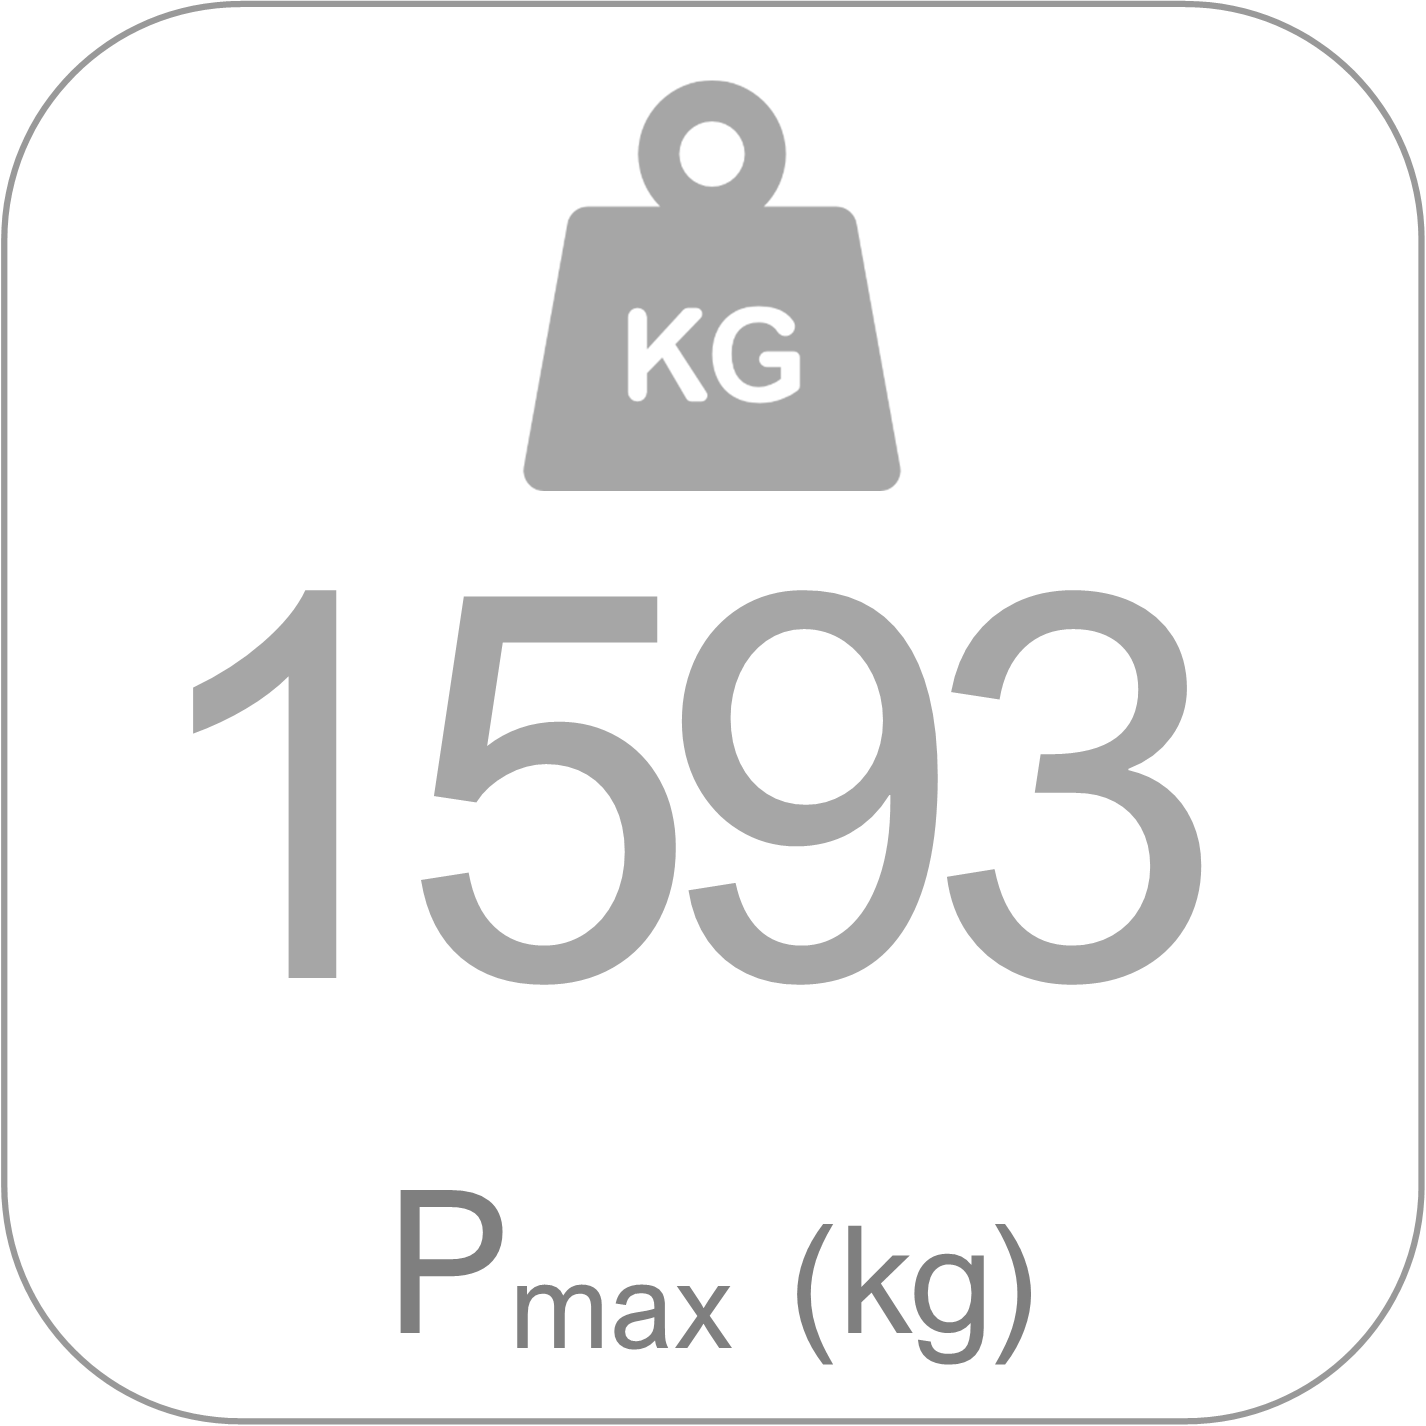 Puntales Serie F - Pmax1593kg